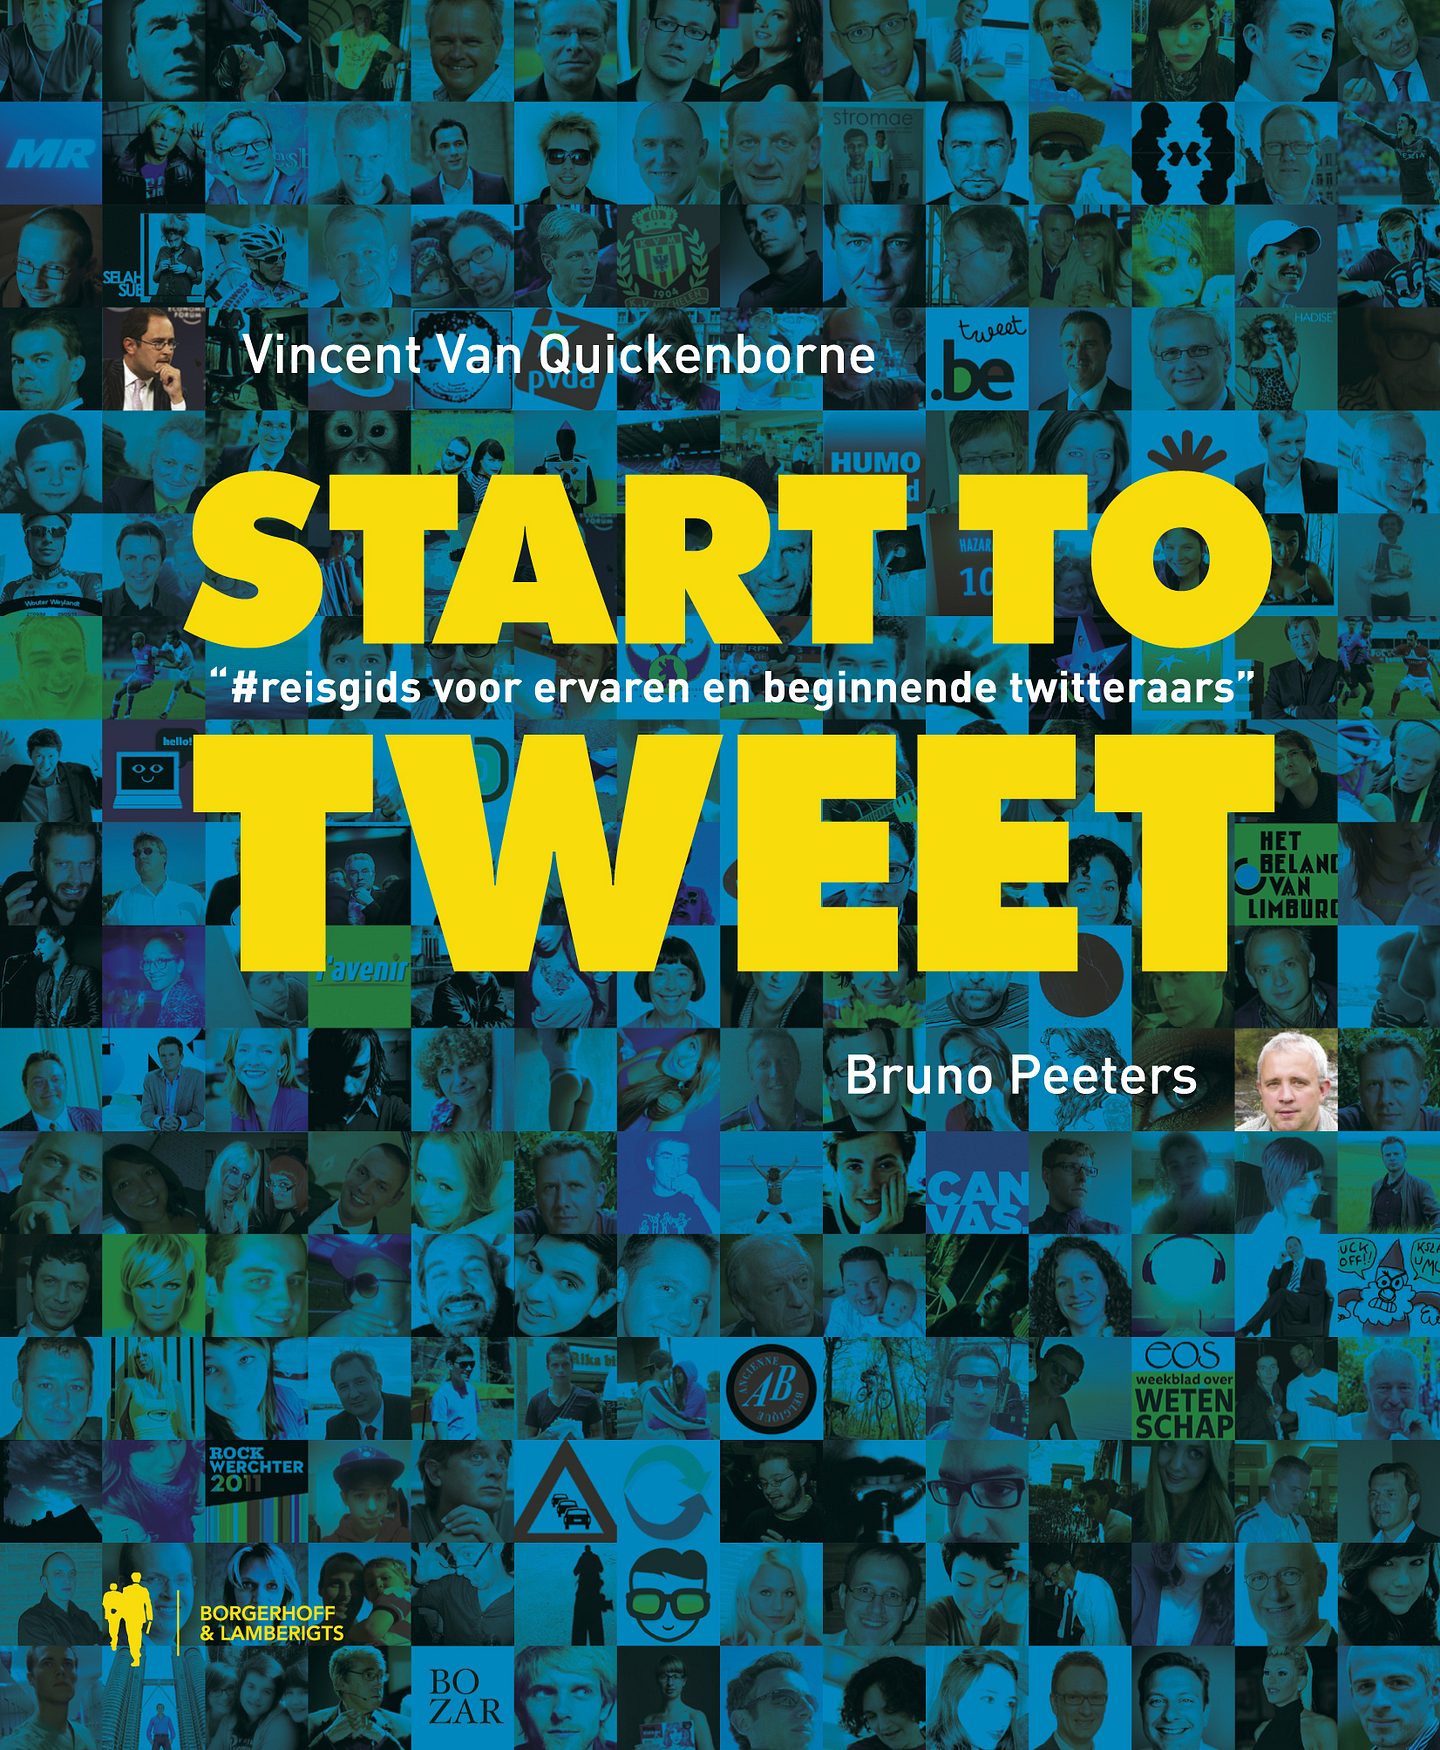 Start to tweet